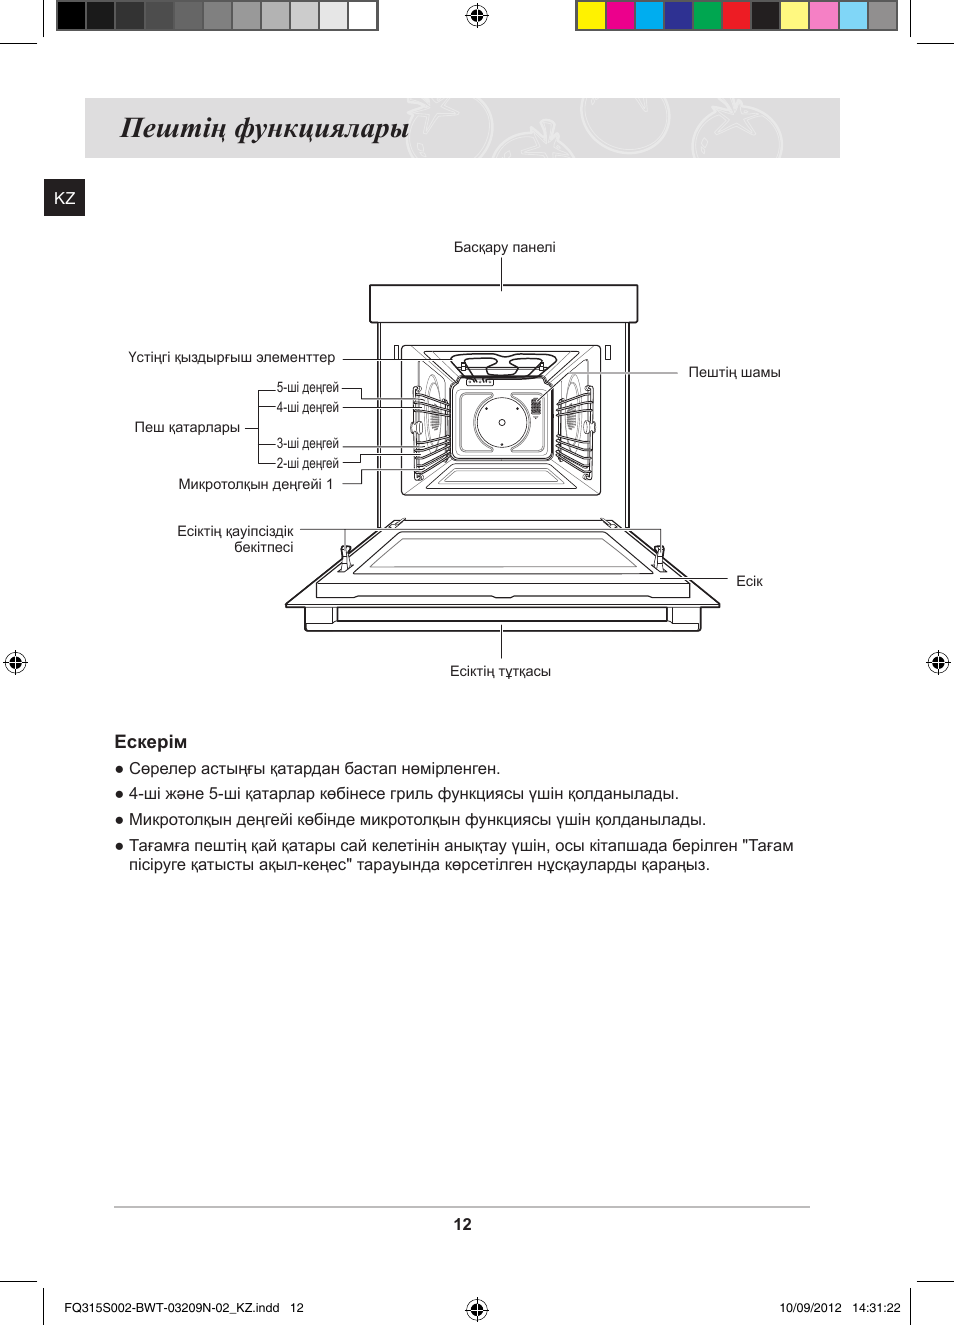 Микроволновая печь Samsung fq315s002